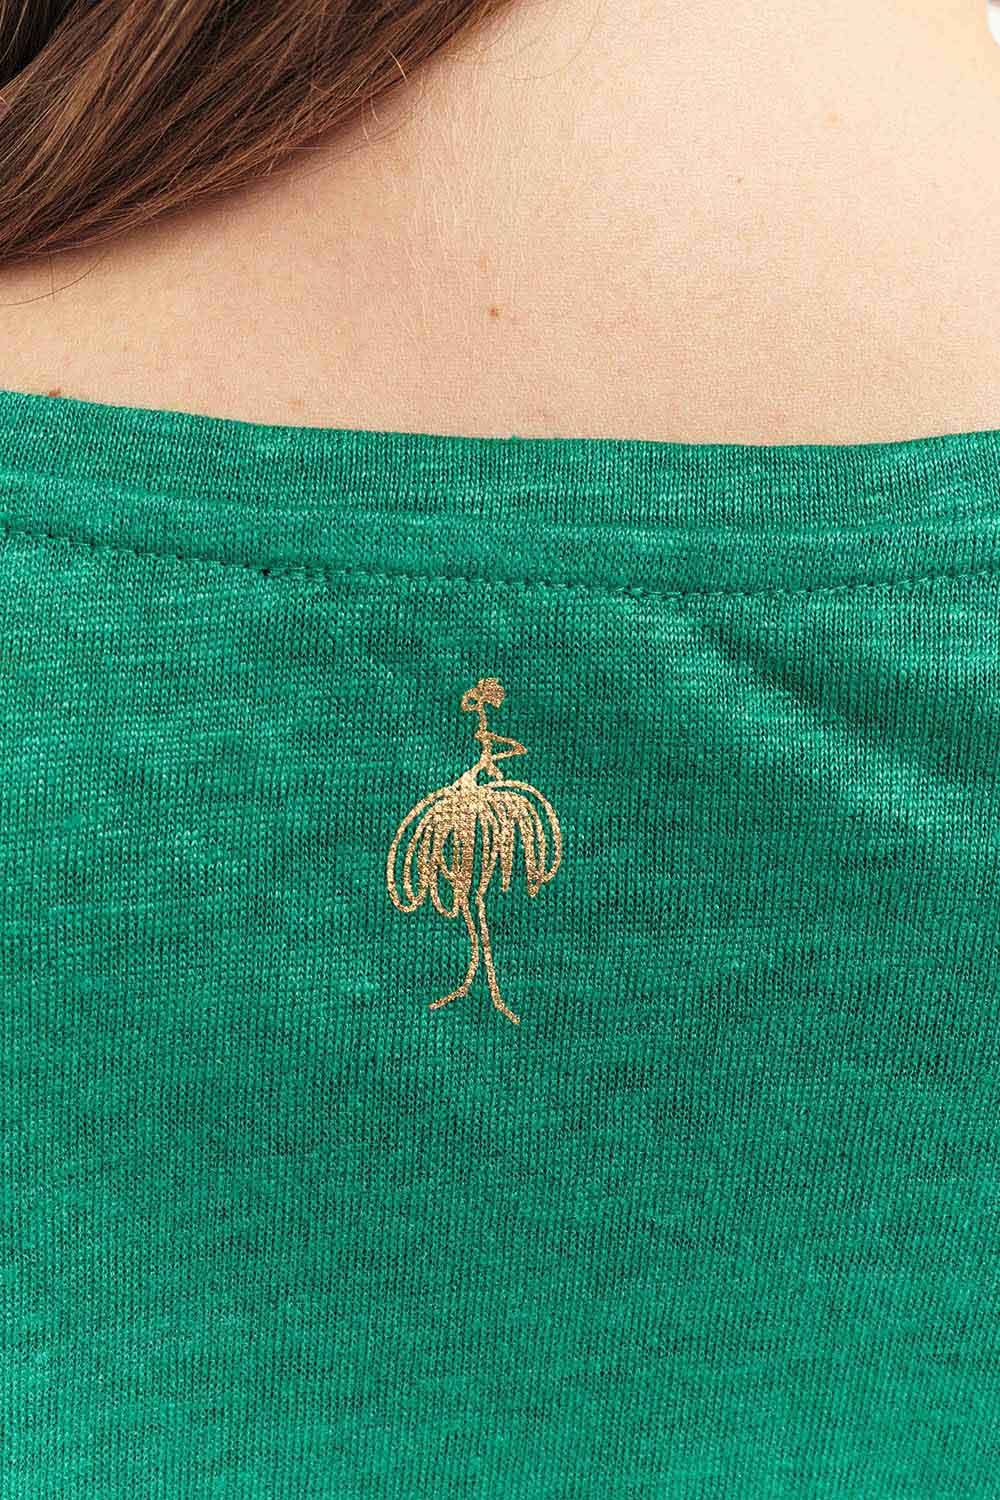 MAGIC - T-shirt green grass maille lin pailletée